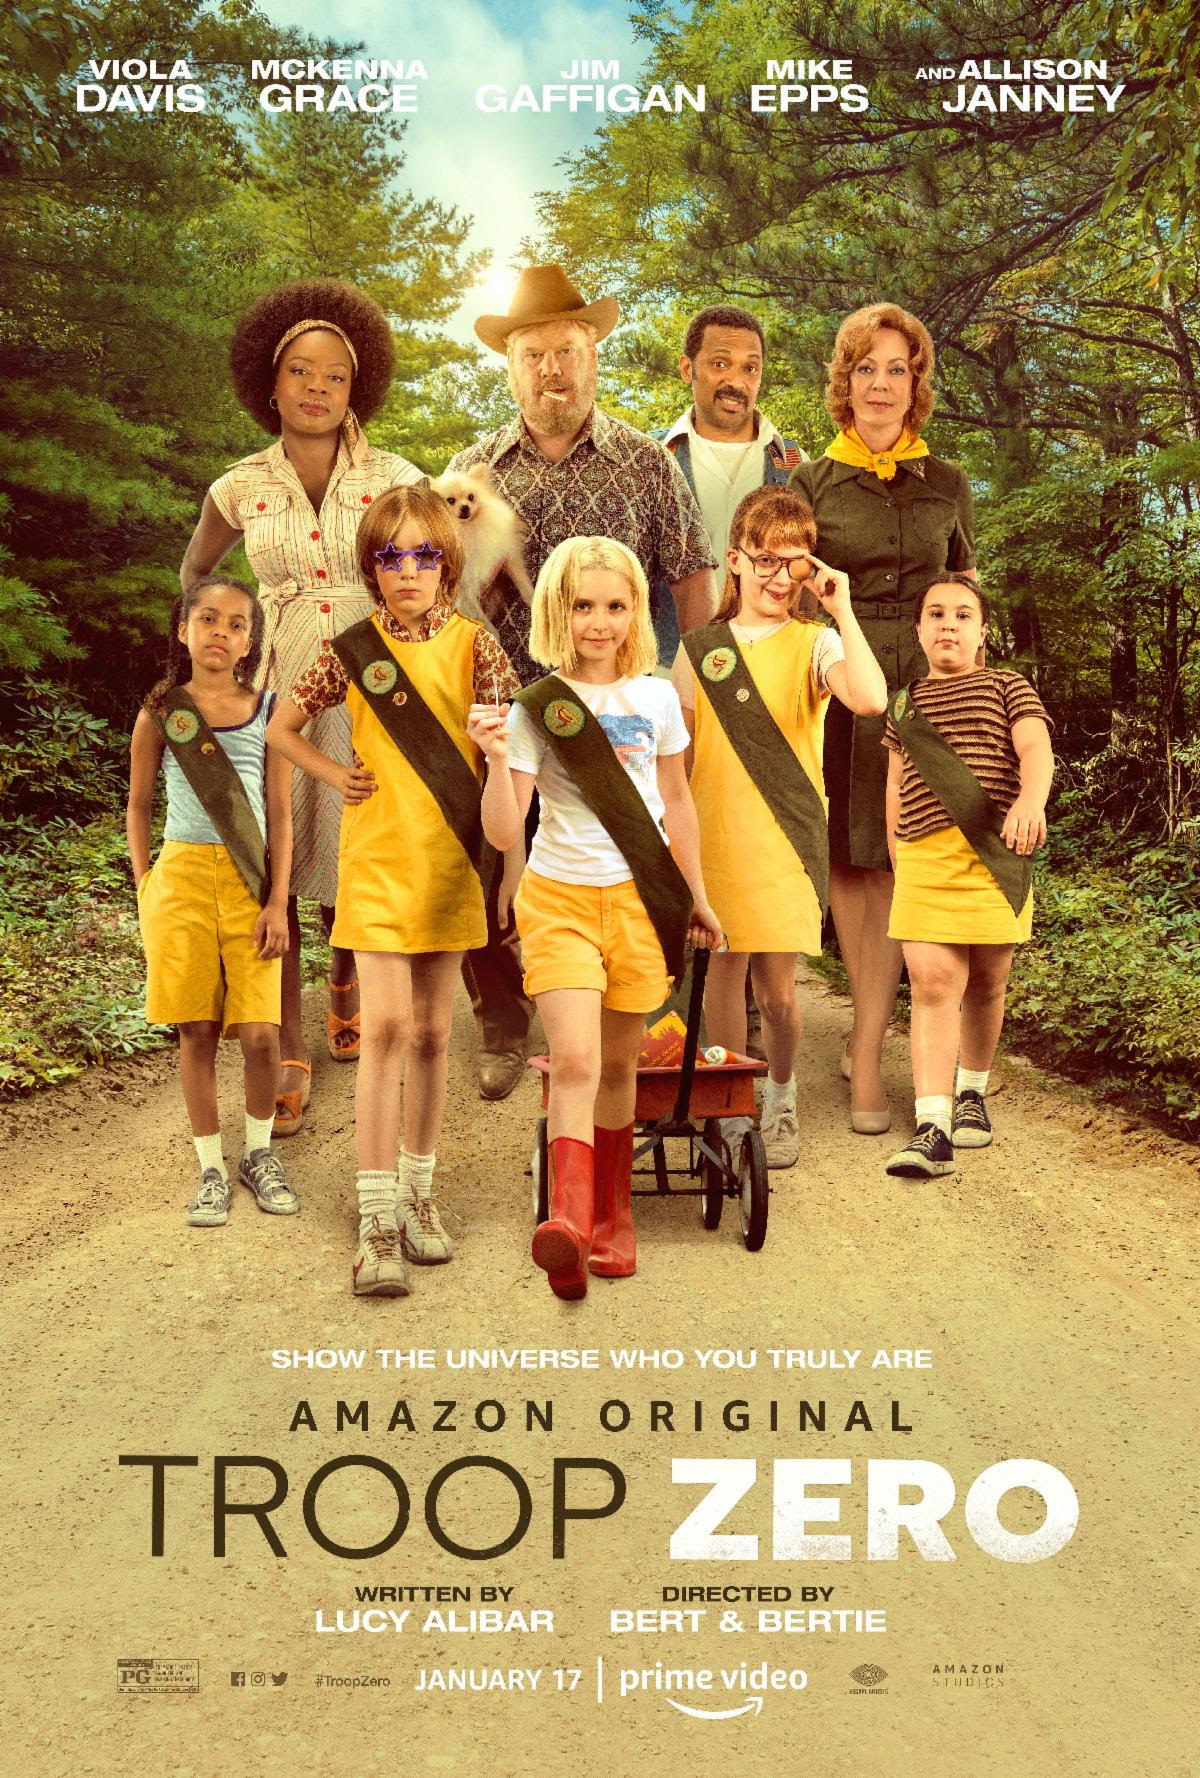 Troop Zero Trailer starring Viola Davis, Jim Gaffigan and Allison Janney